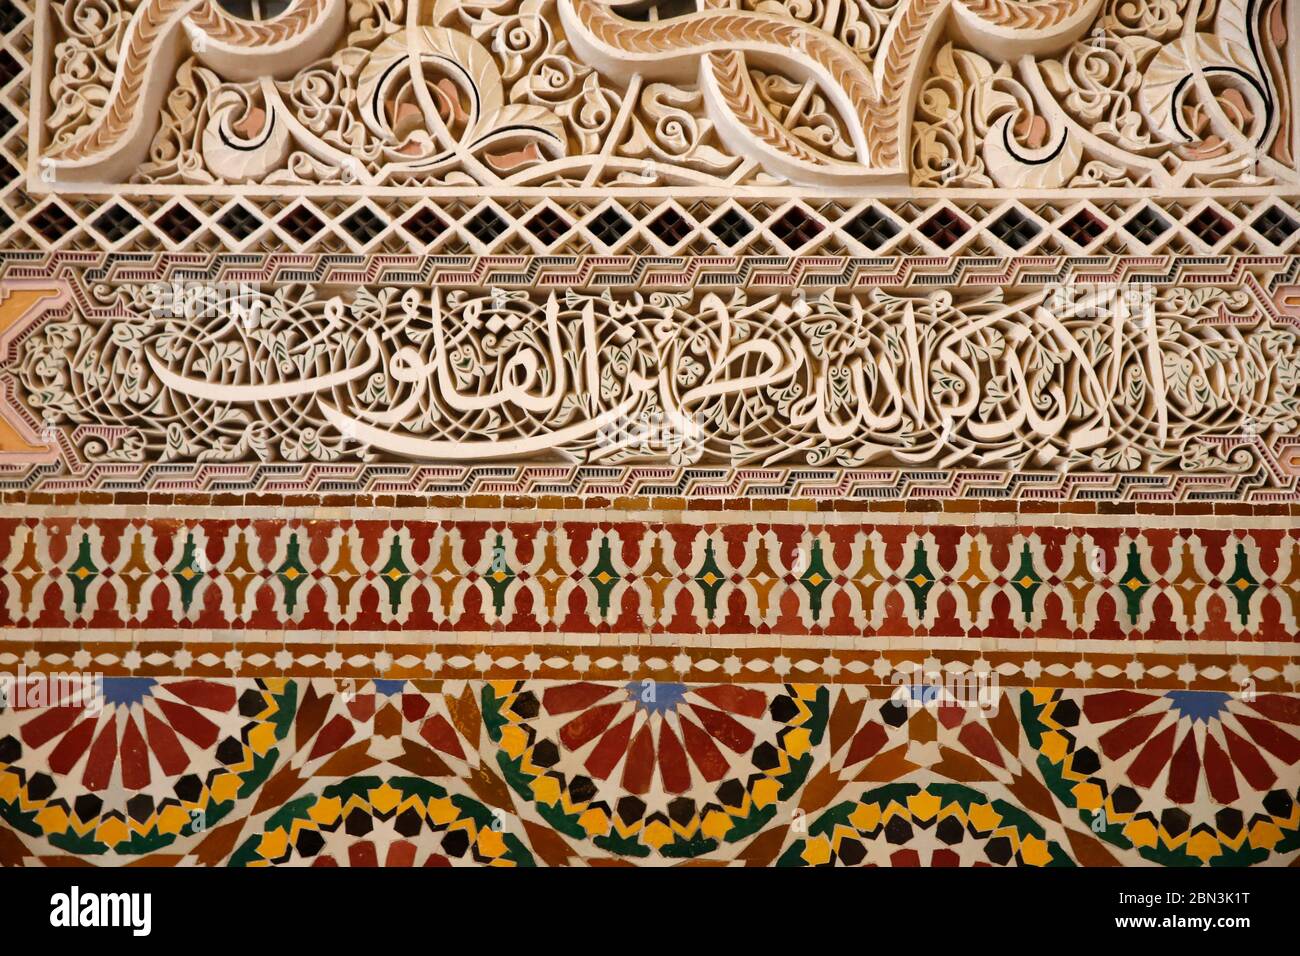 Mosquée Hassan II, Casablanca, Maroc. Écritures et mosaïques sculptées. Banque D'Images